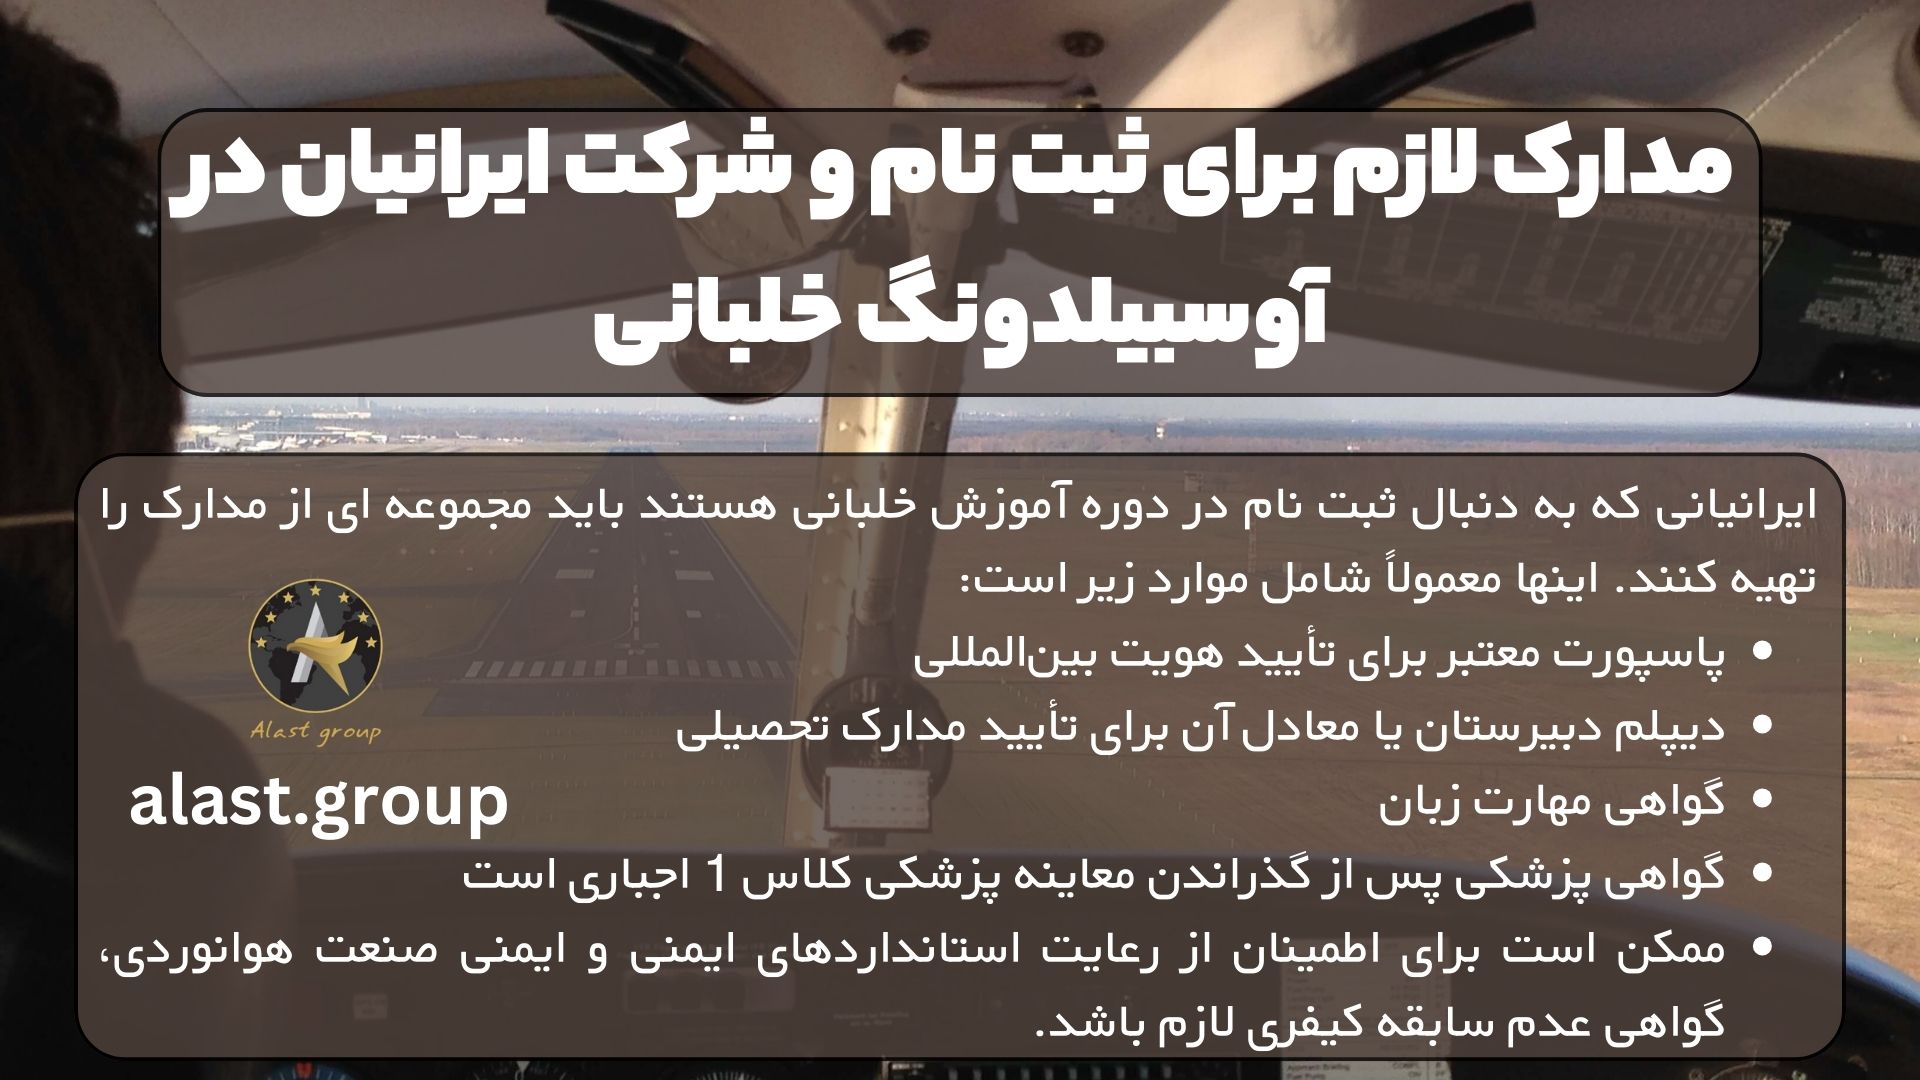 مدارک لازم برای ثبت نام و شرکت ایرانیان در آوسبیلدونگ خلبانی